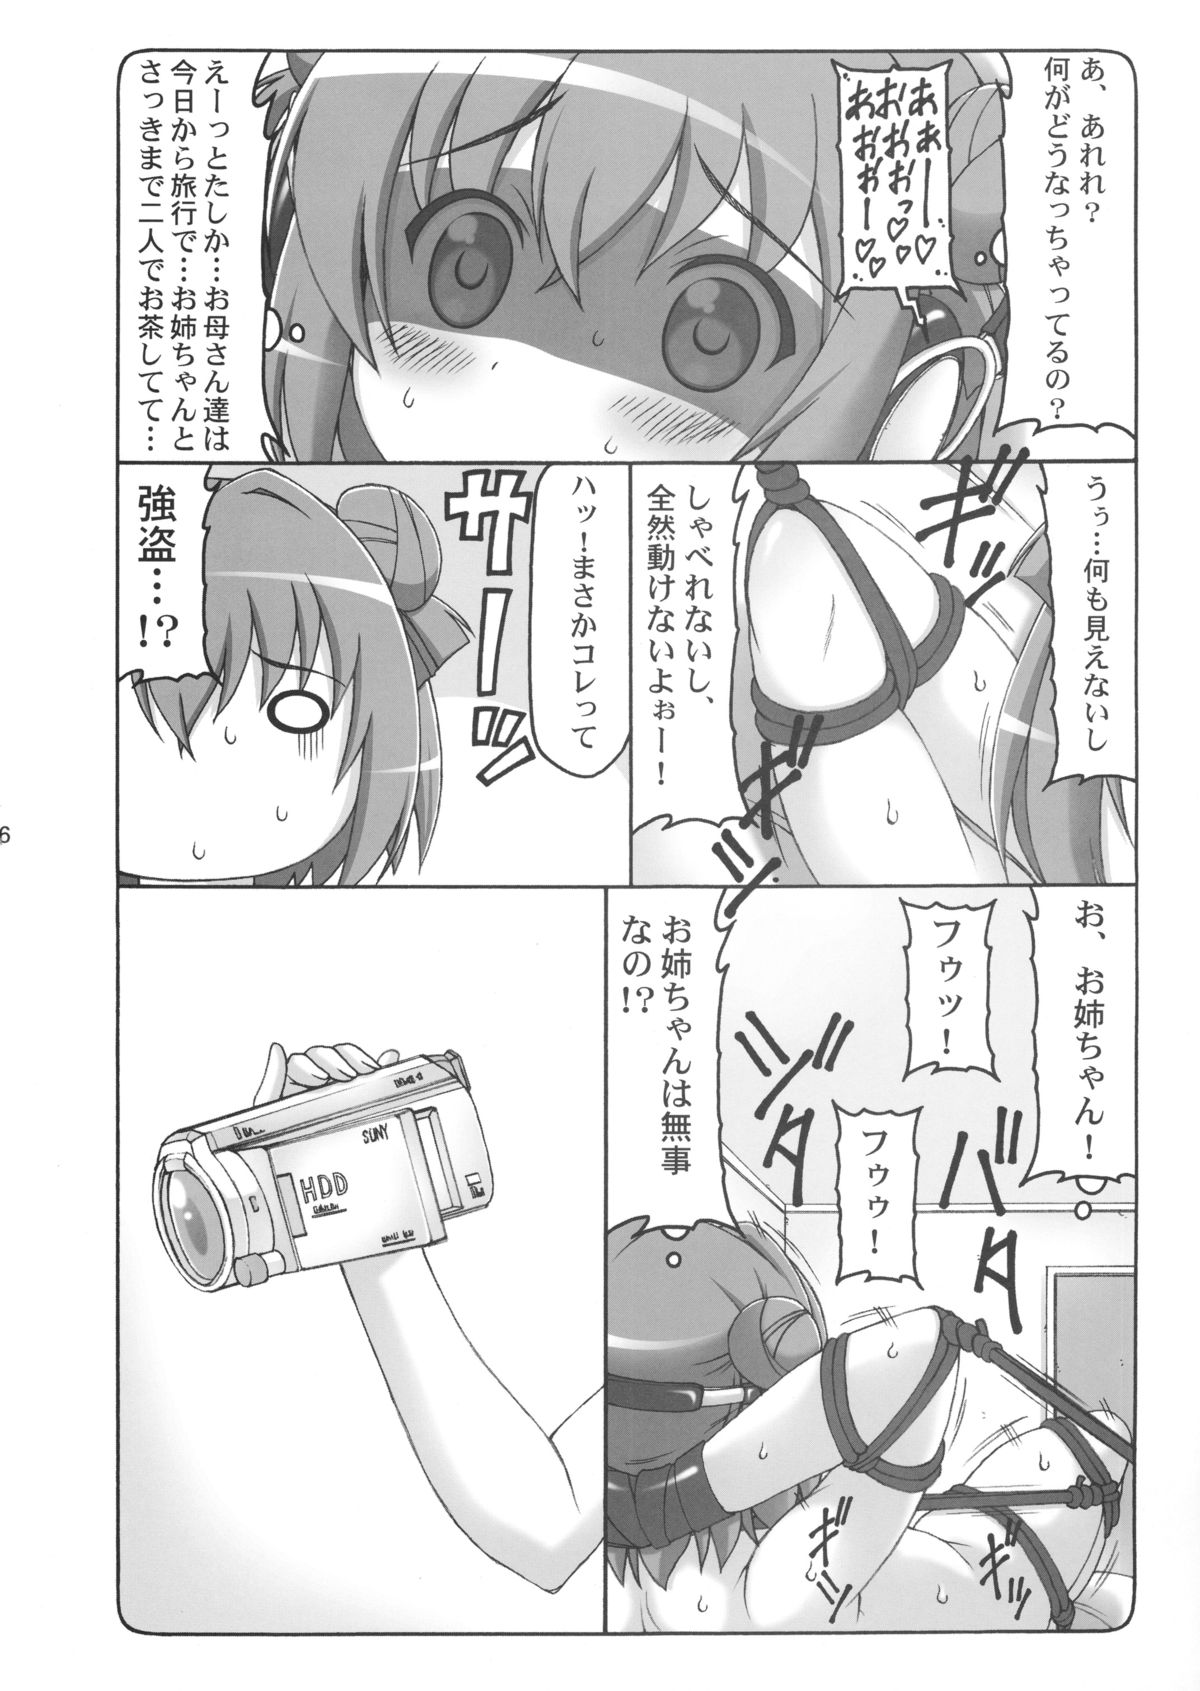 (COMIC1☆7)  [Abarenbow Tengu (Izumi Yuujiro)] FutaYuri (YuruYuri) page 5 full